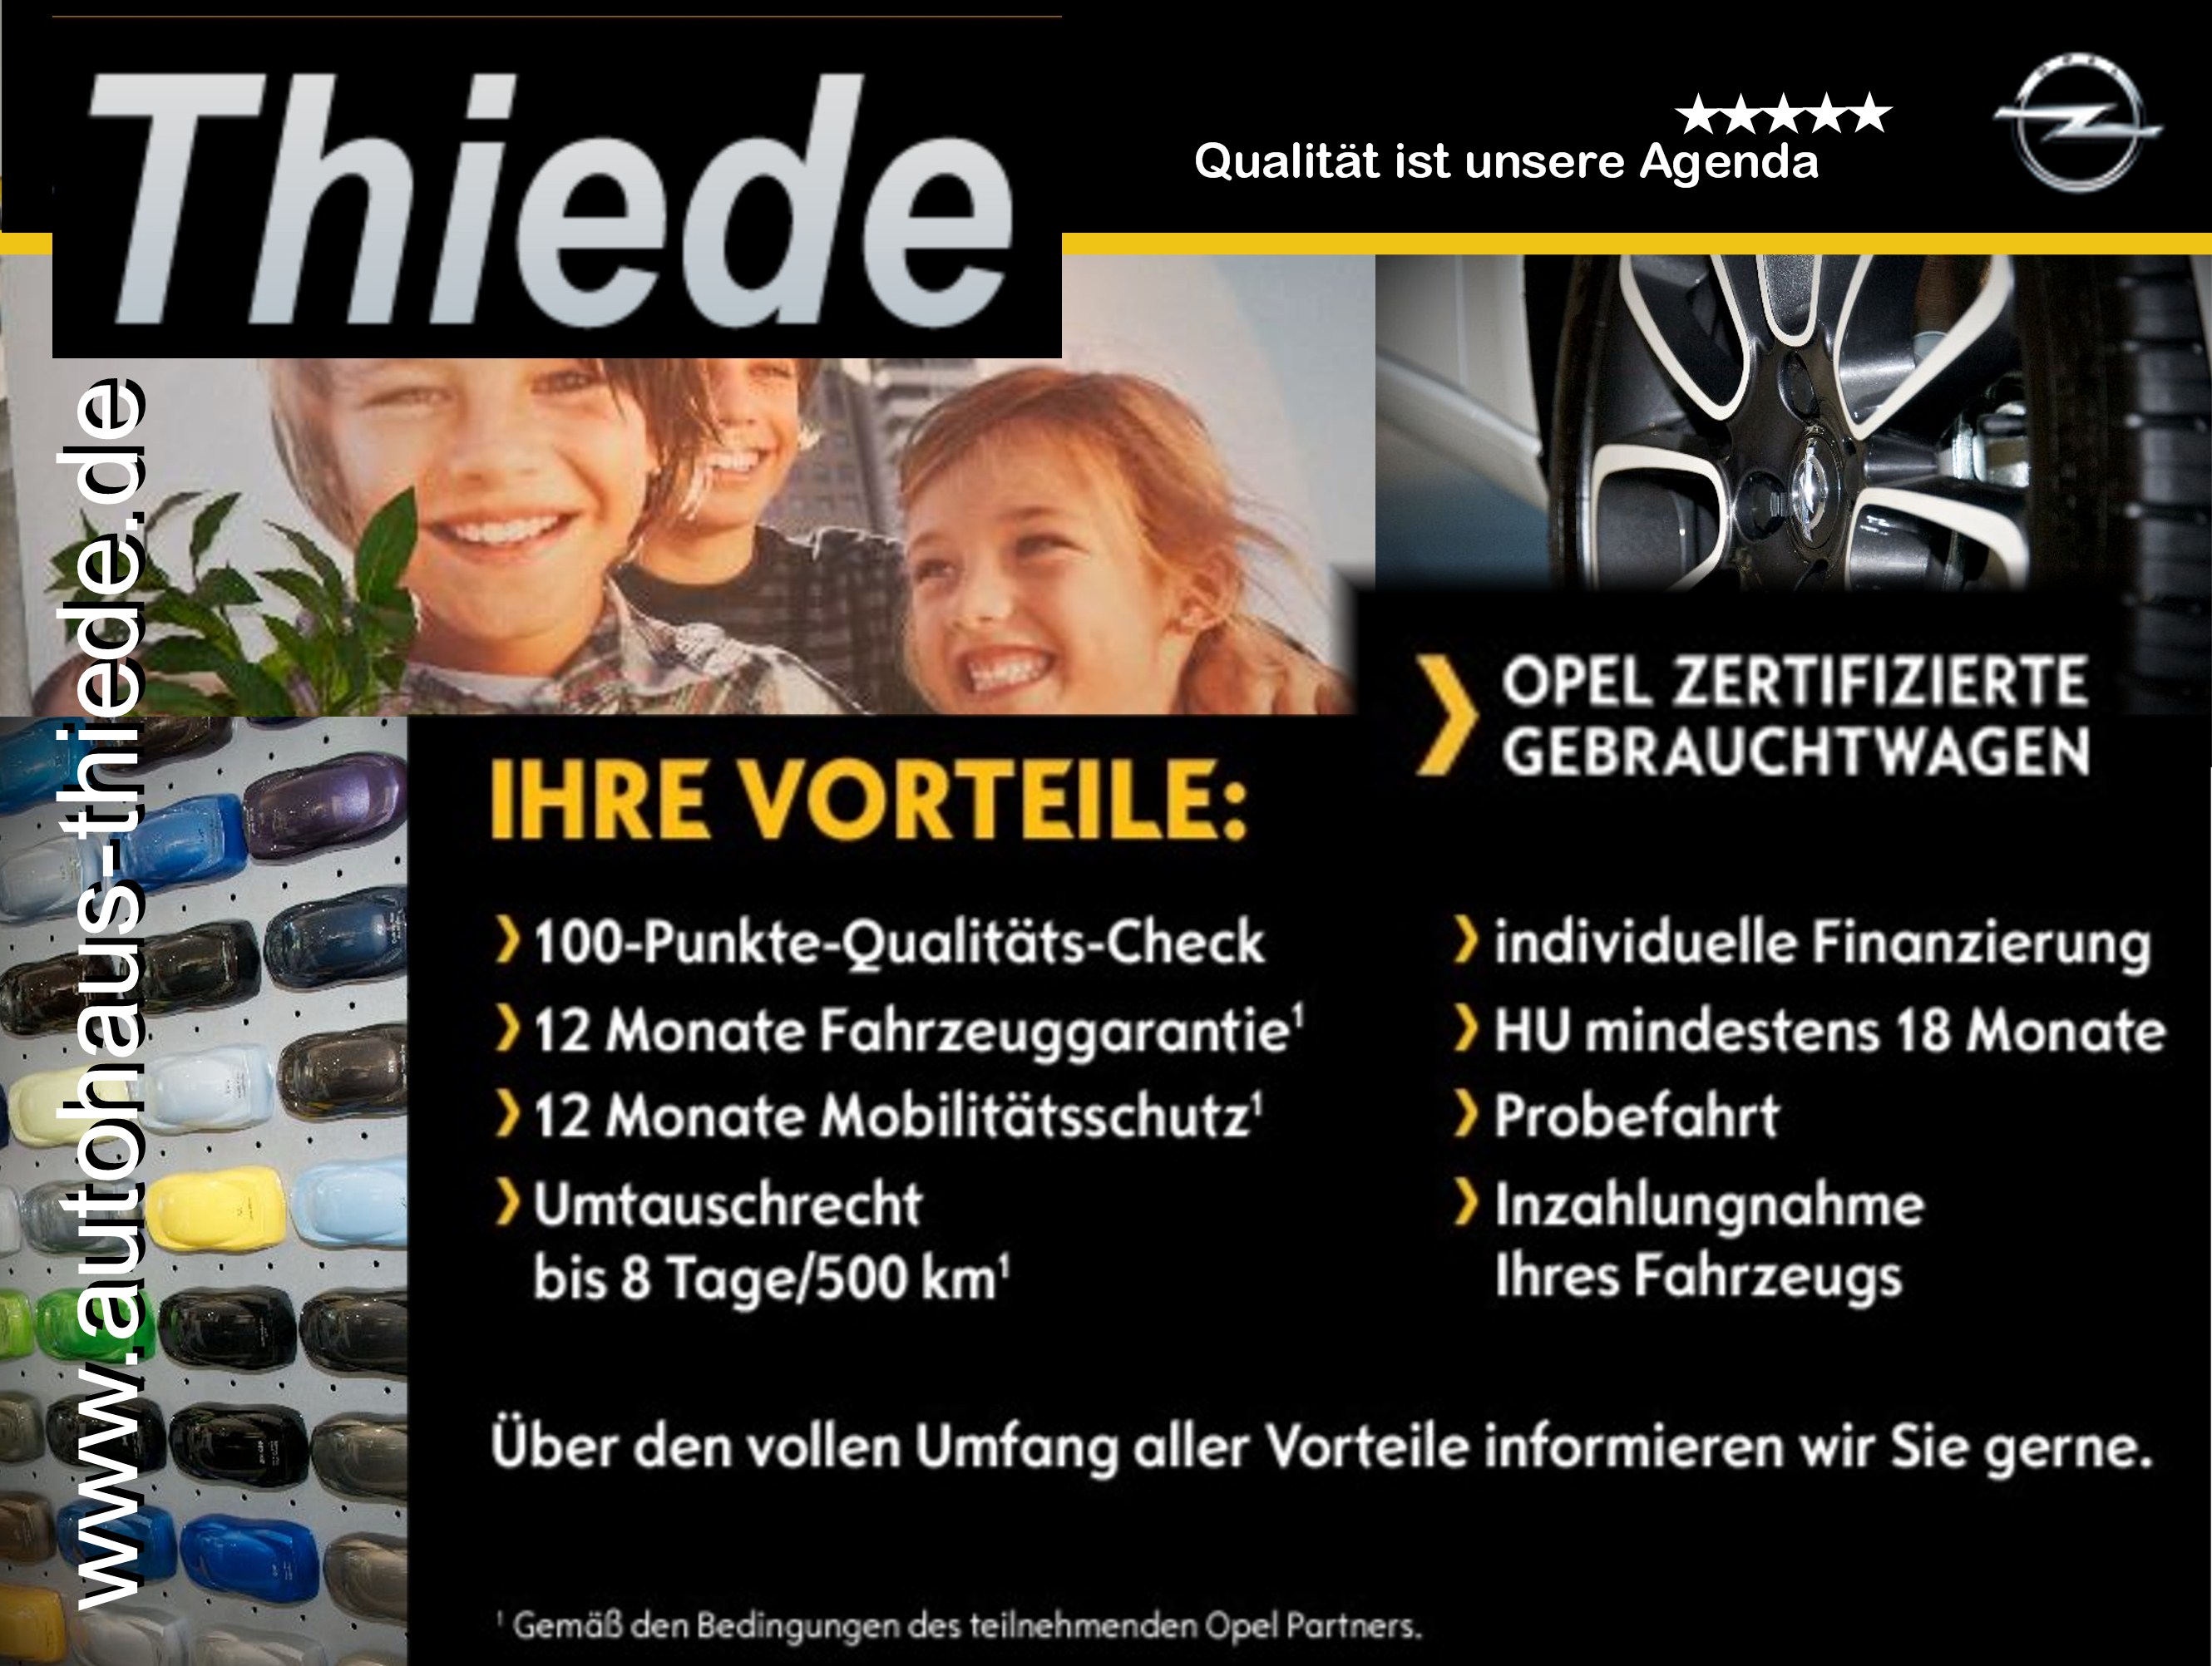 Opel zertifizierte Gebrauchtwagen